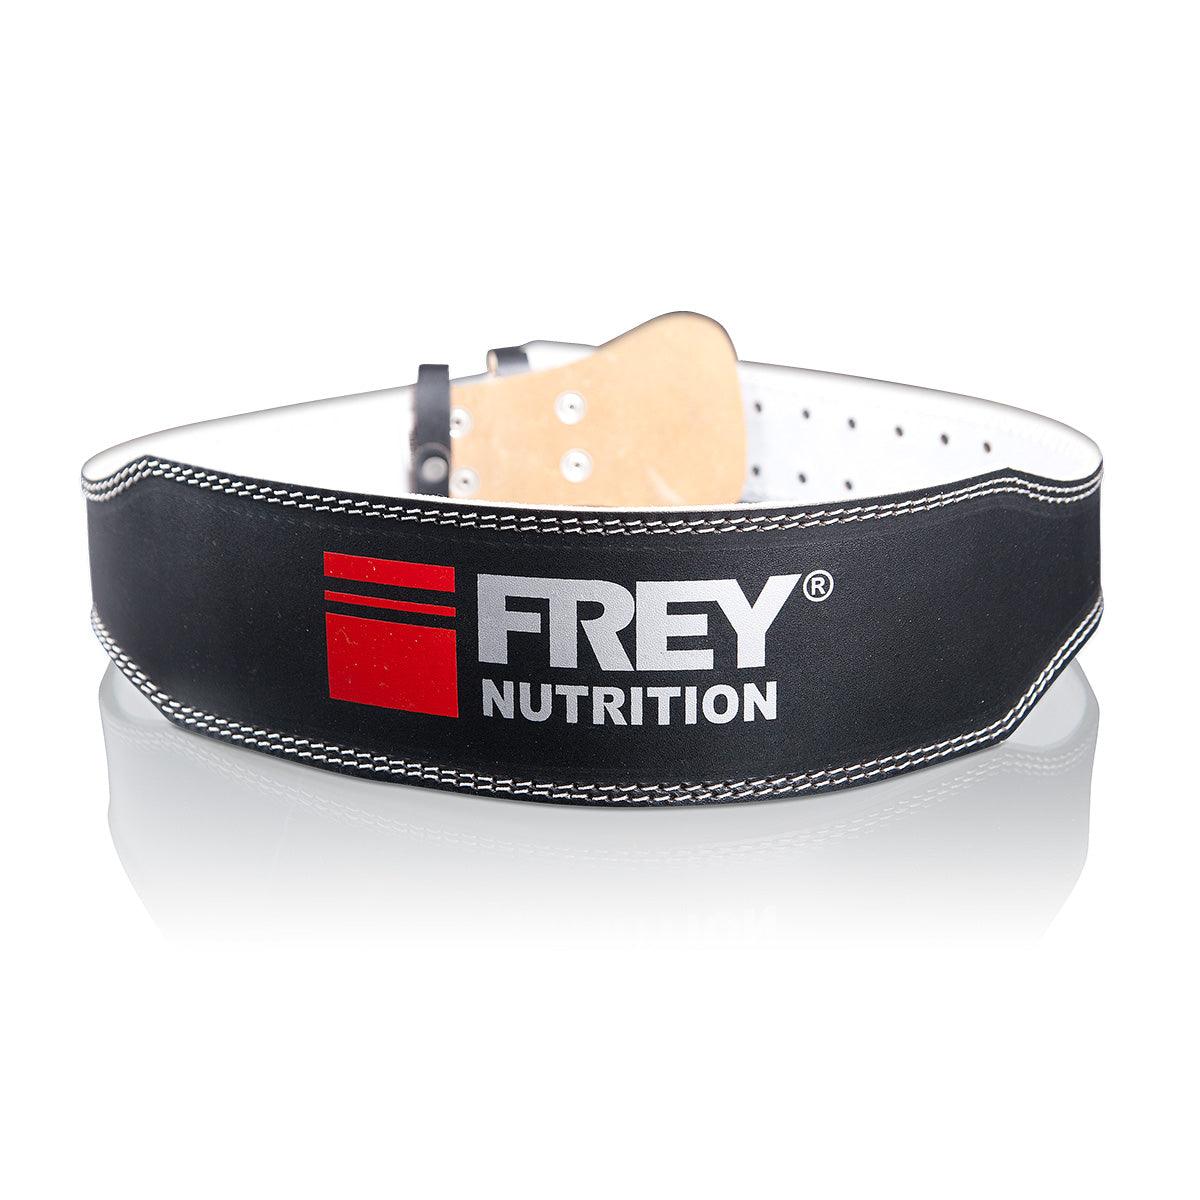 FREY PROFESSIONAL BELT - Demo-Frey-Nutrition